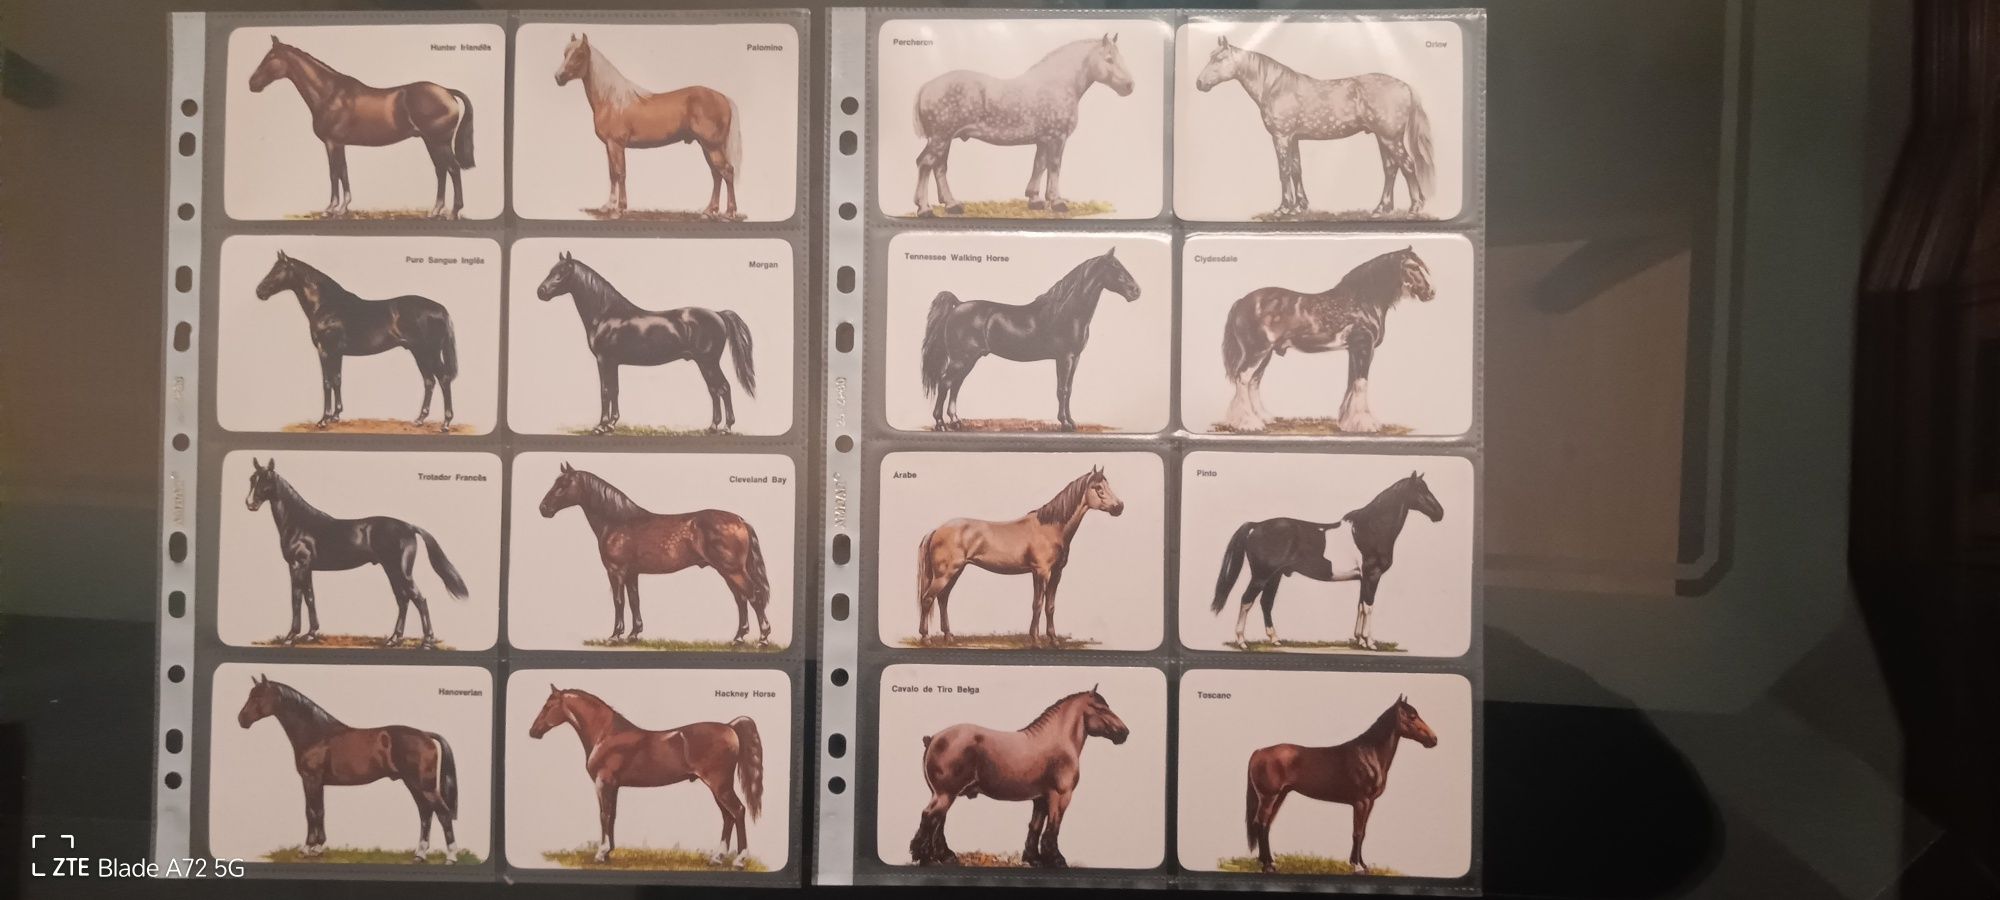 Calendário raça de cavalos